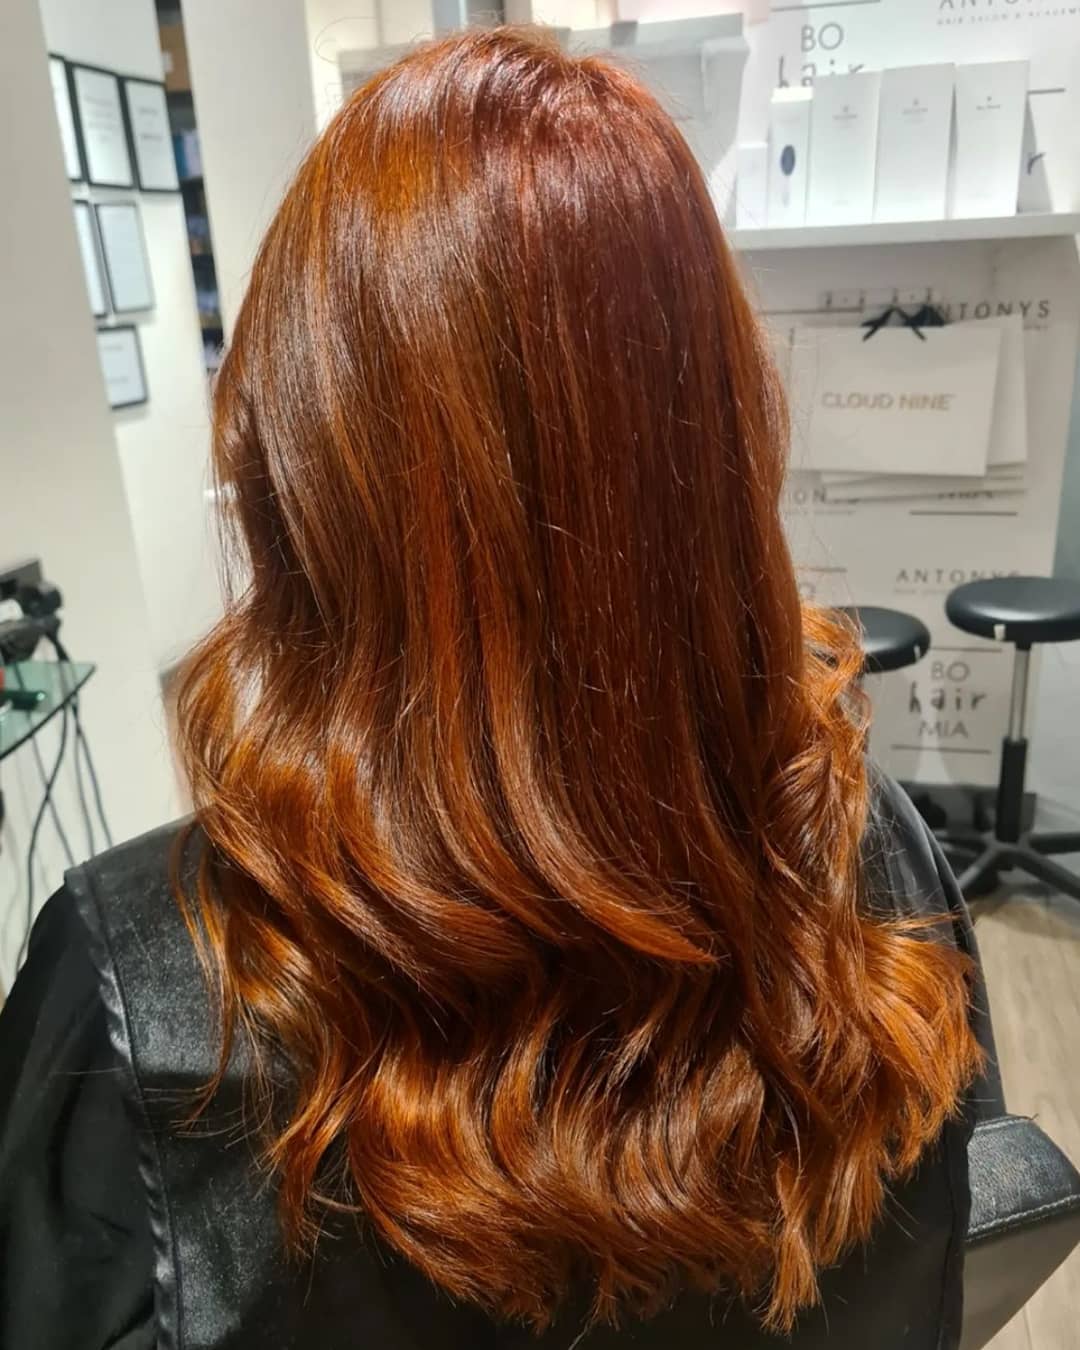 copper hair colour bury town centre at antonys for hair